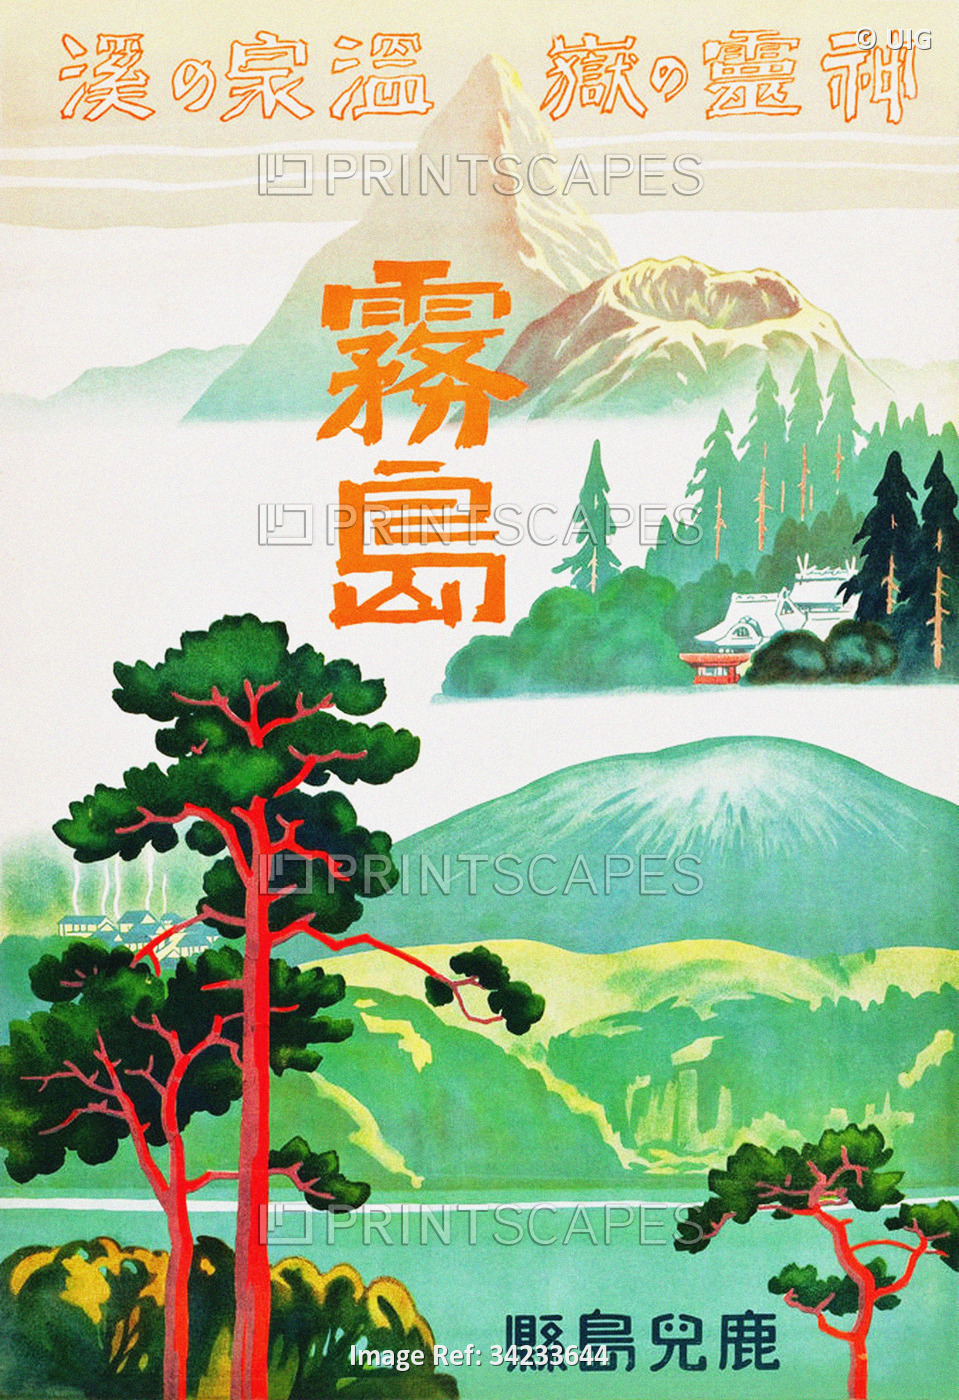 Japan: 'Kirishima, Kagoshima Prefecture, Retreat of Spirits'. Advertising poster for Japanese Govern